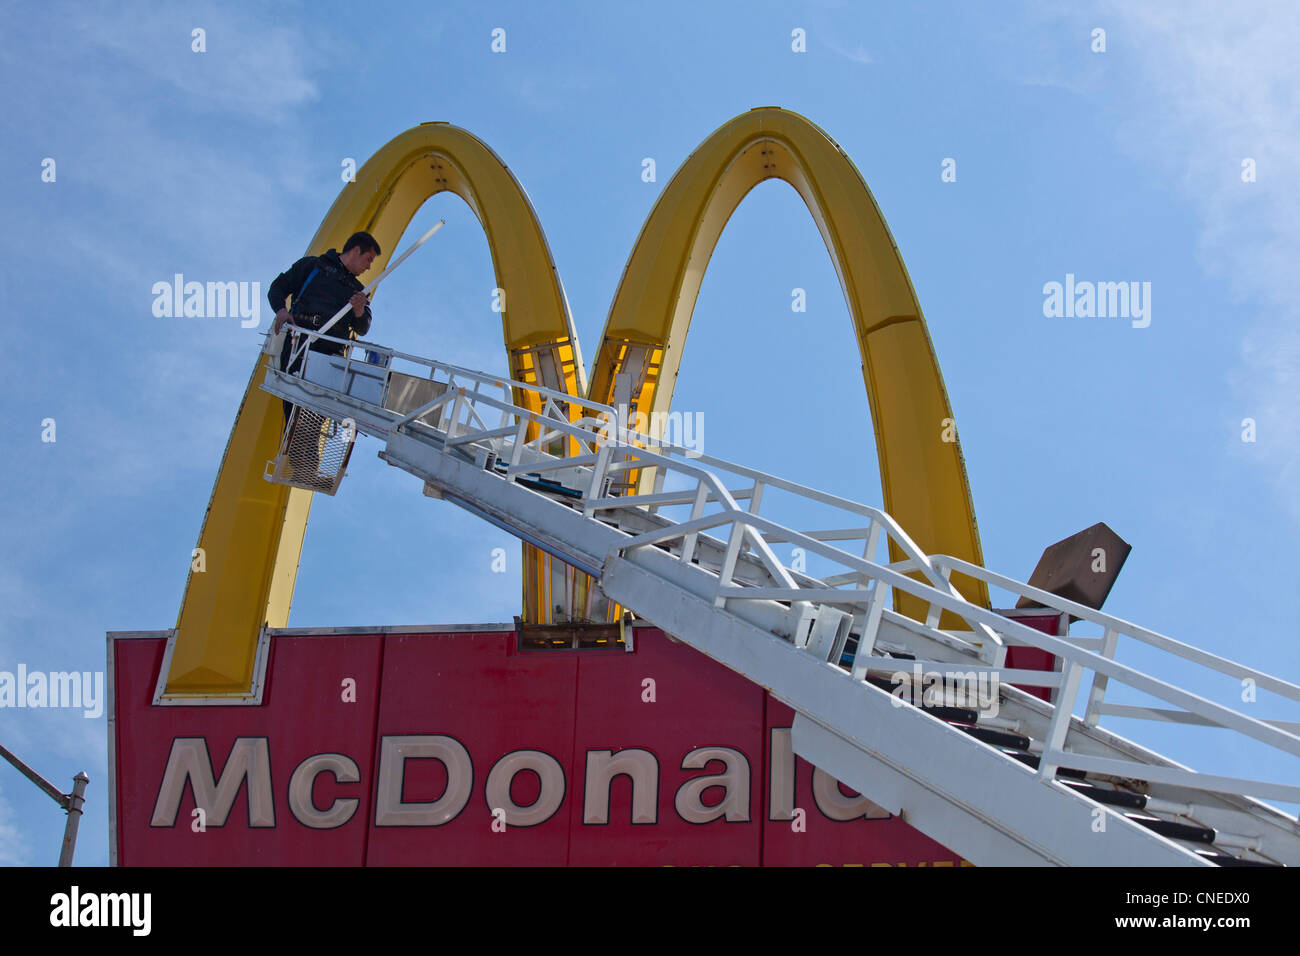 Detroit, Michigan - ein Arbeiter ersetzt Leuchtstoffröhren in McDonalds "Golden Arches" Zeichen. Stockfoto